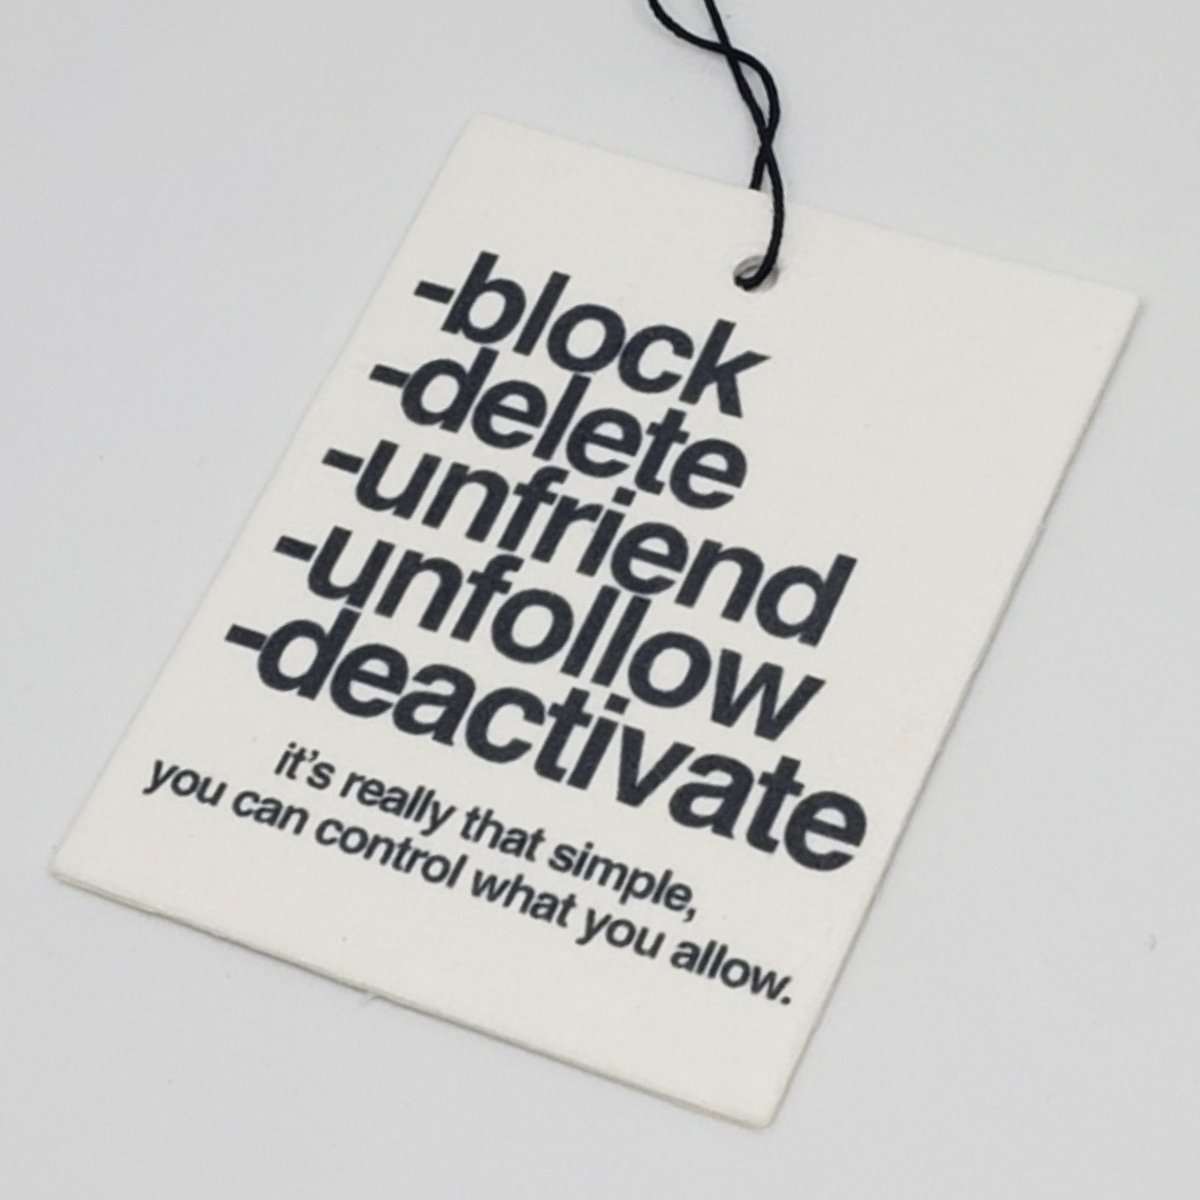 Image of block delete unfriend unfollow deactivate Airfresh